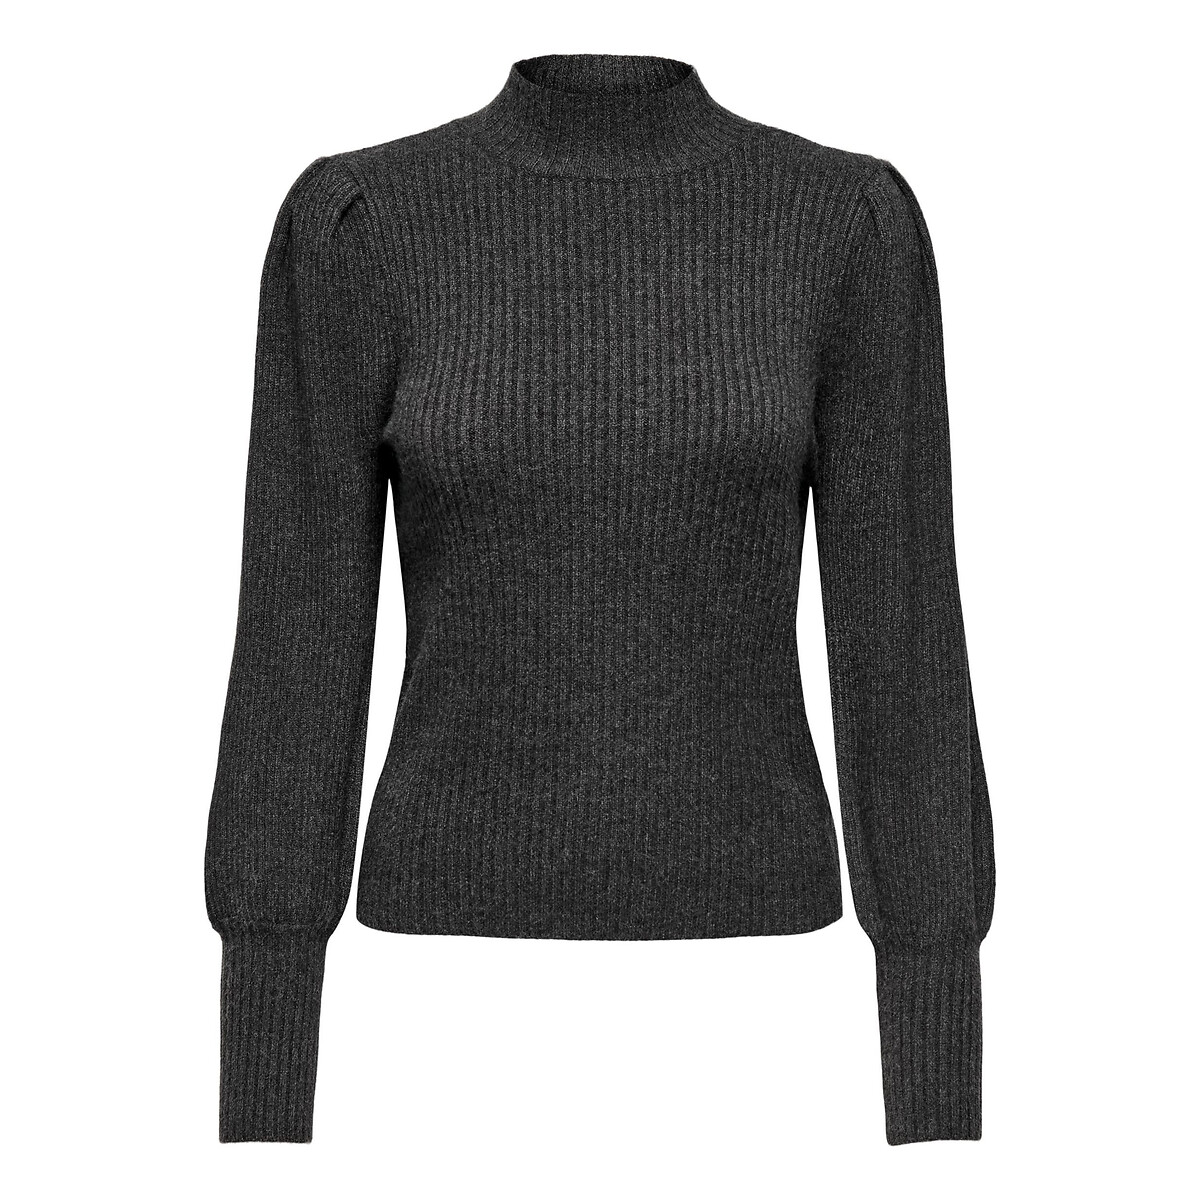 Пуловер с воротником-стойкой из тонкого трикотажа XXL серый пуловер с высоким воротником из тонкого трикотажа m черный